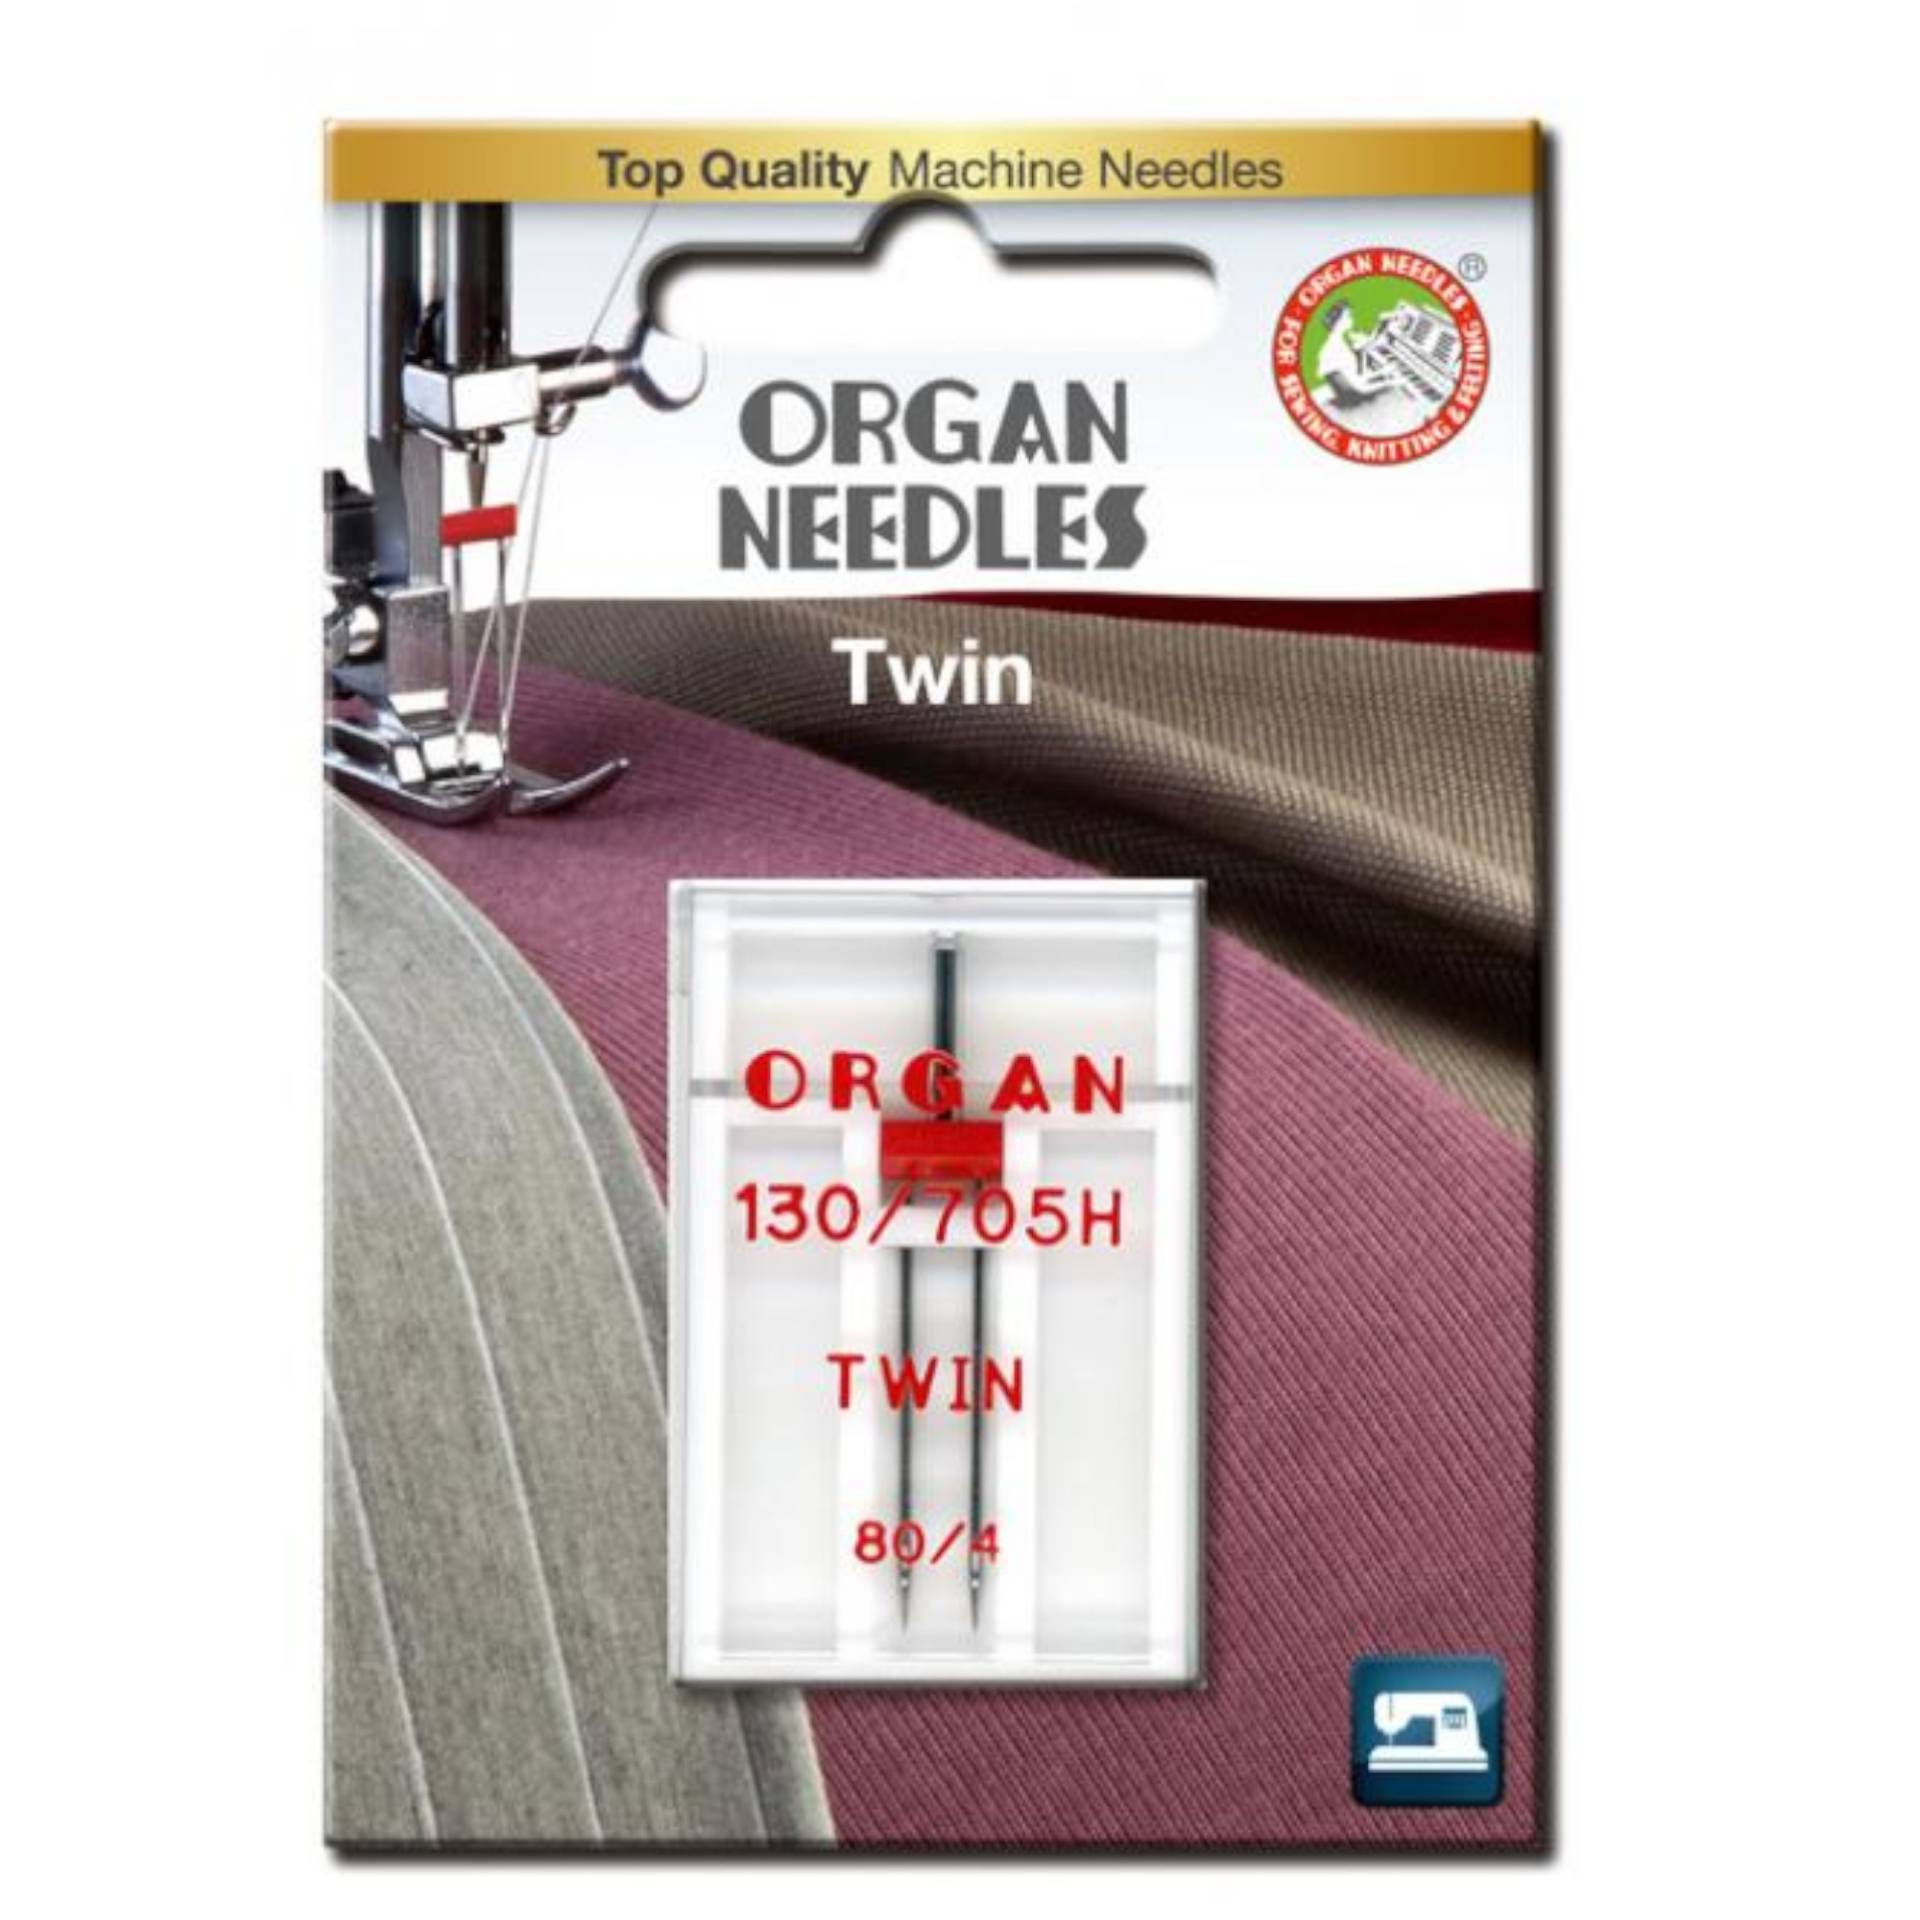 Organ Doppelnadel / Zwillingsnadel 130/705, 80/4,0 mm von Stoffe Hemmers